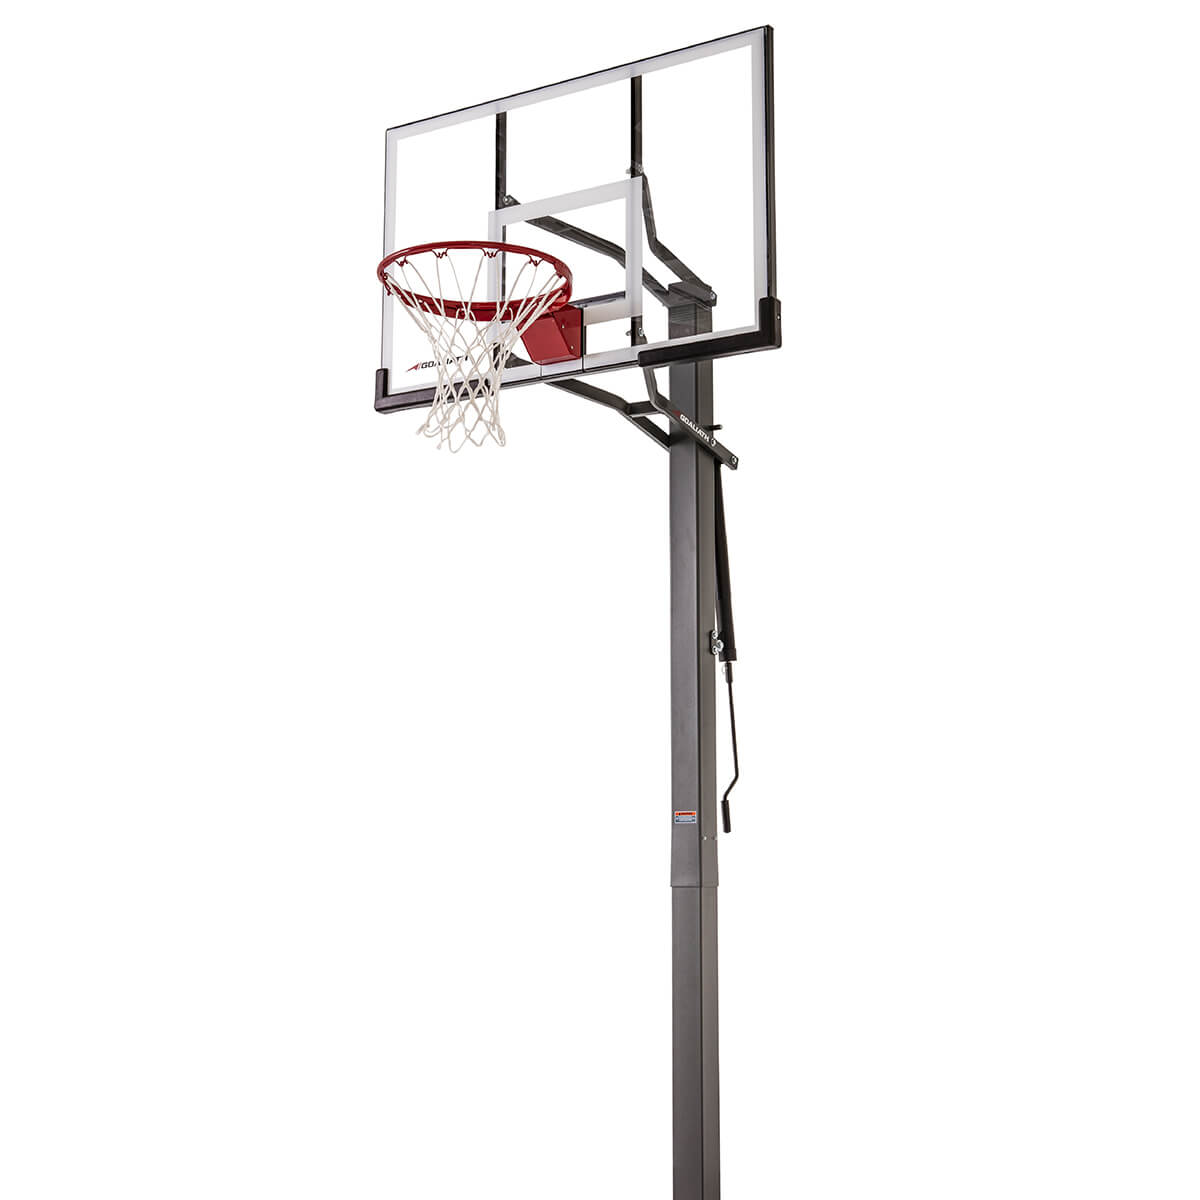 Goaliath GB50 InGround Basketballanlage online kaufen